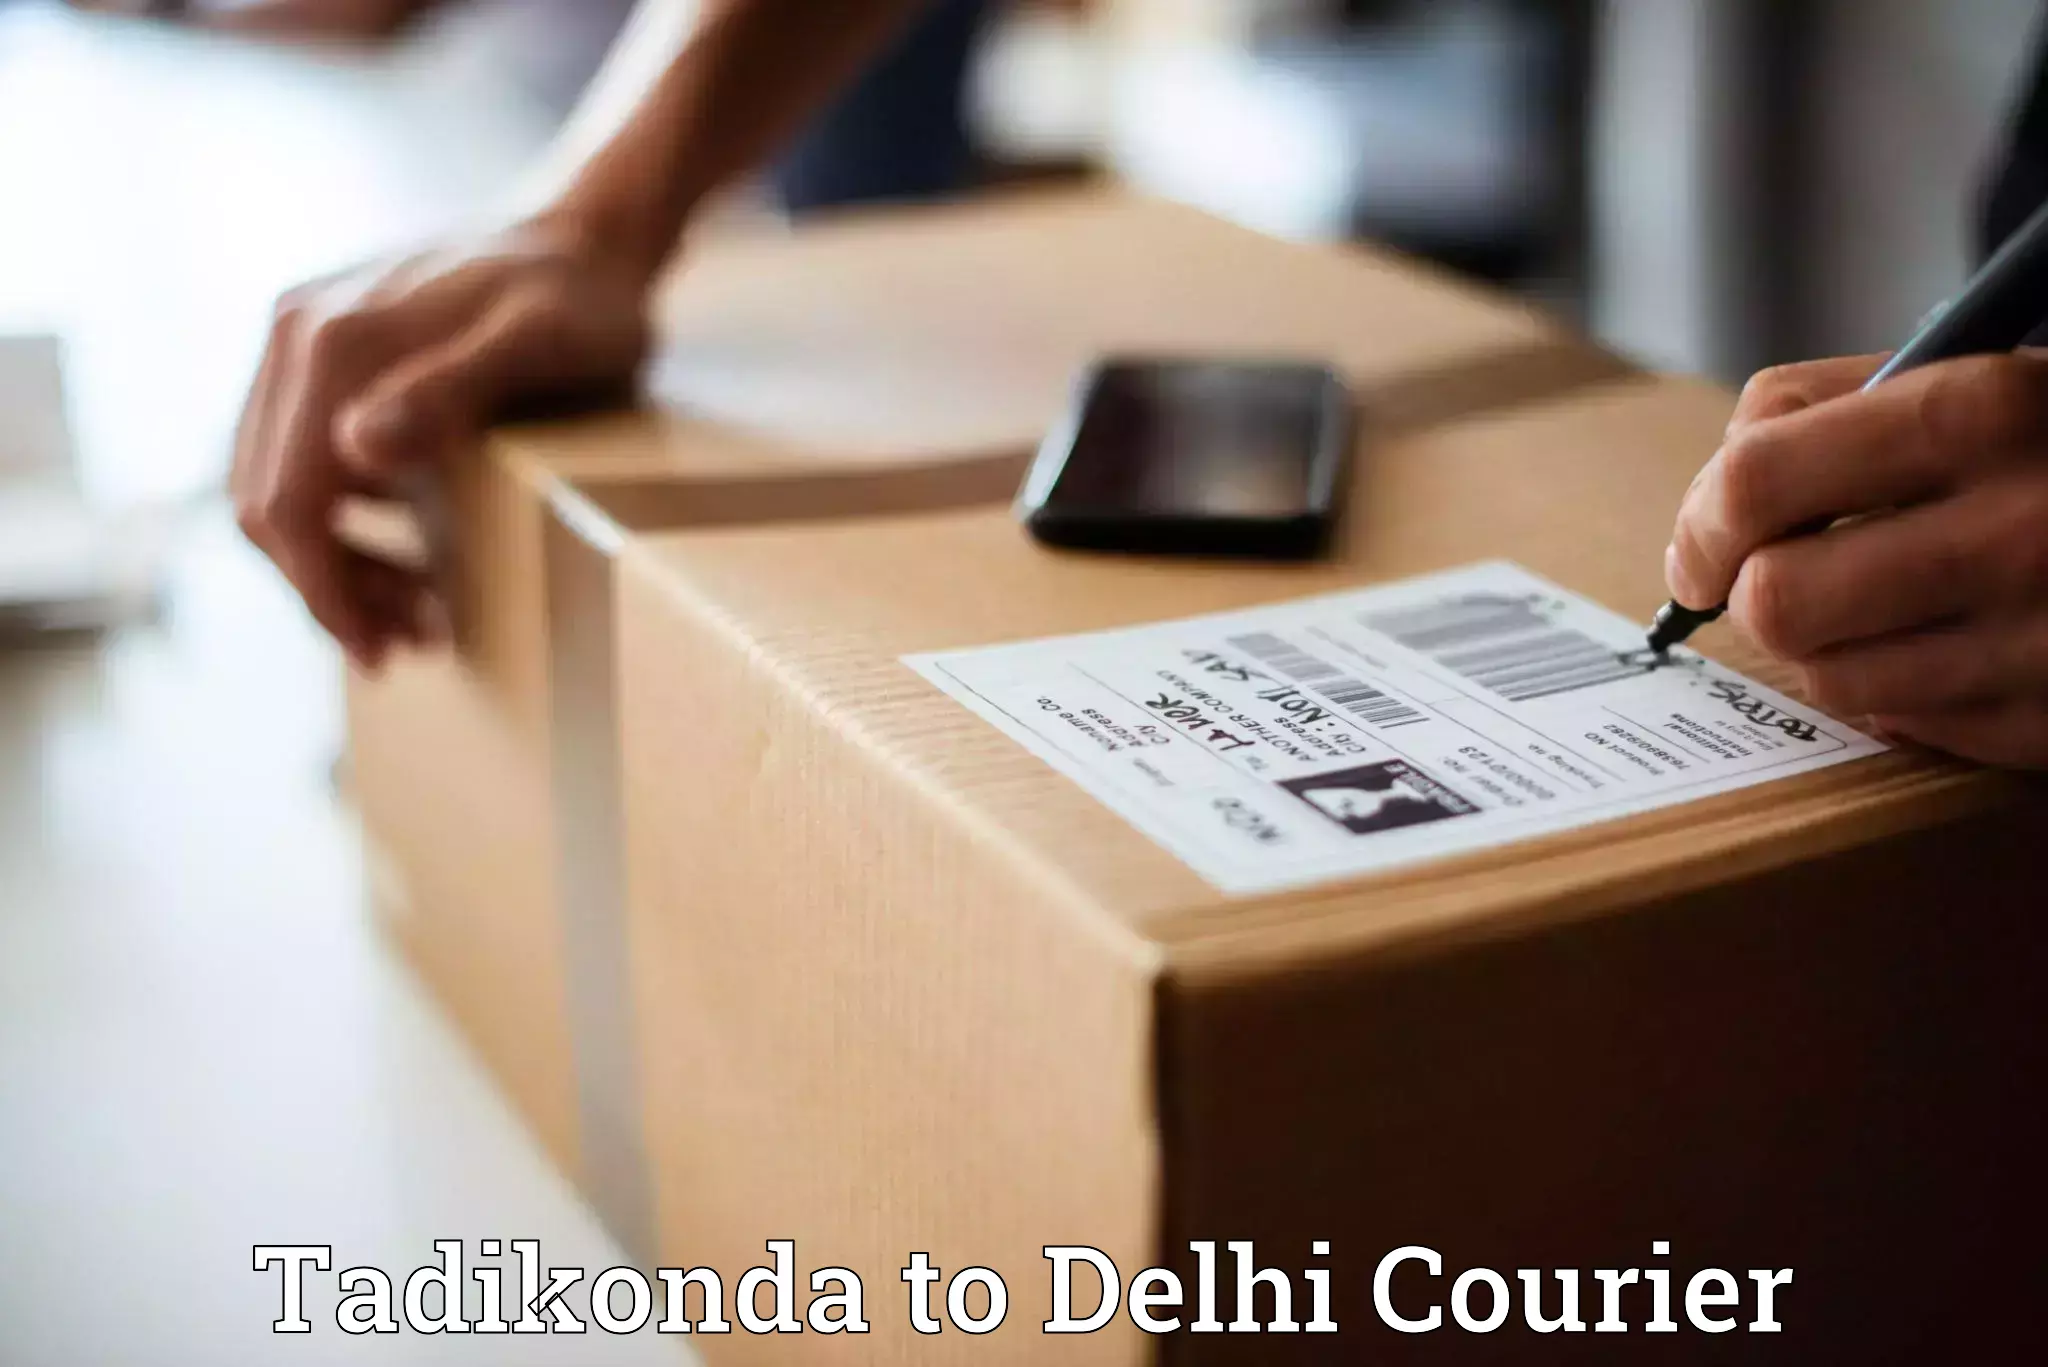 Logistics service provider Tadikonda to Indraprastha